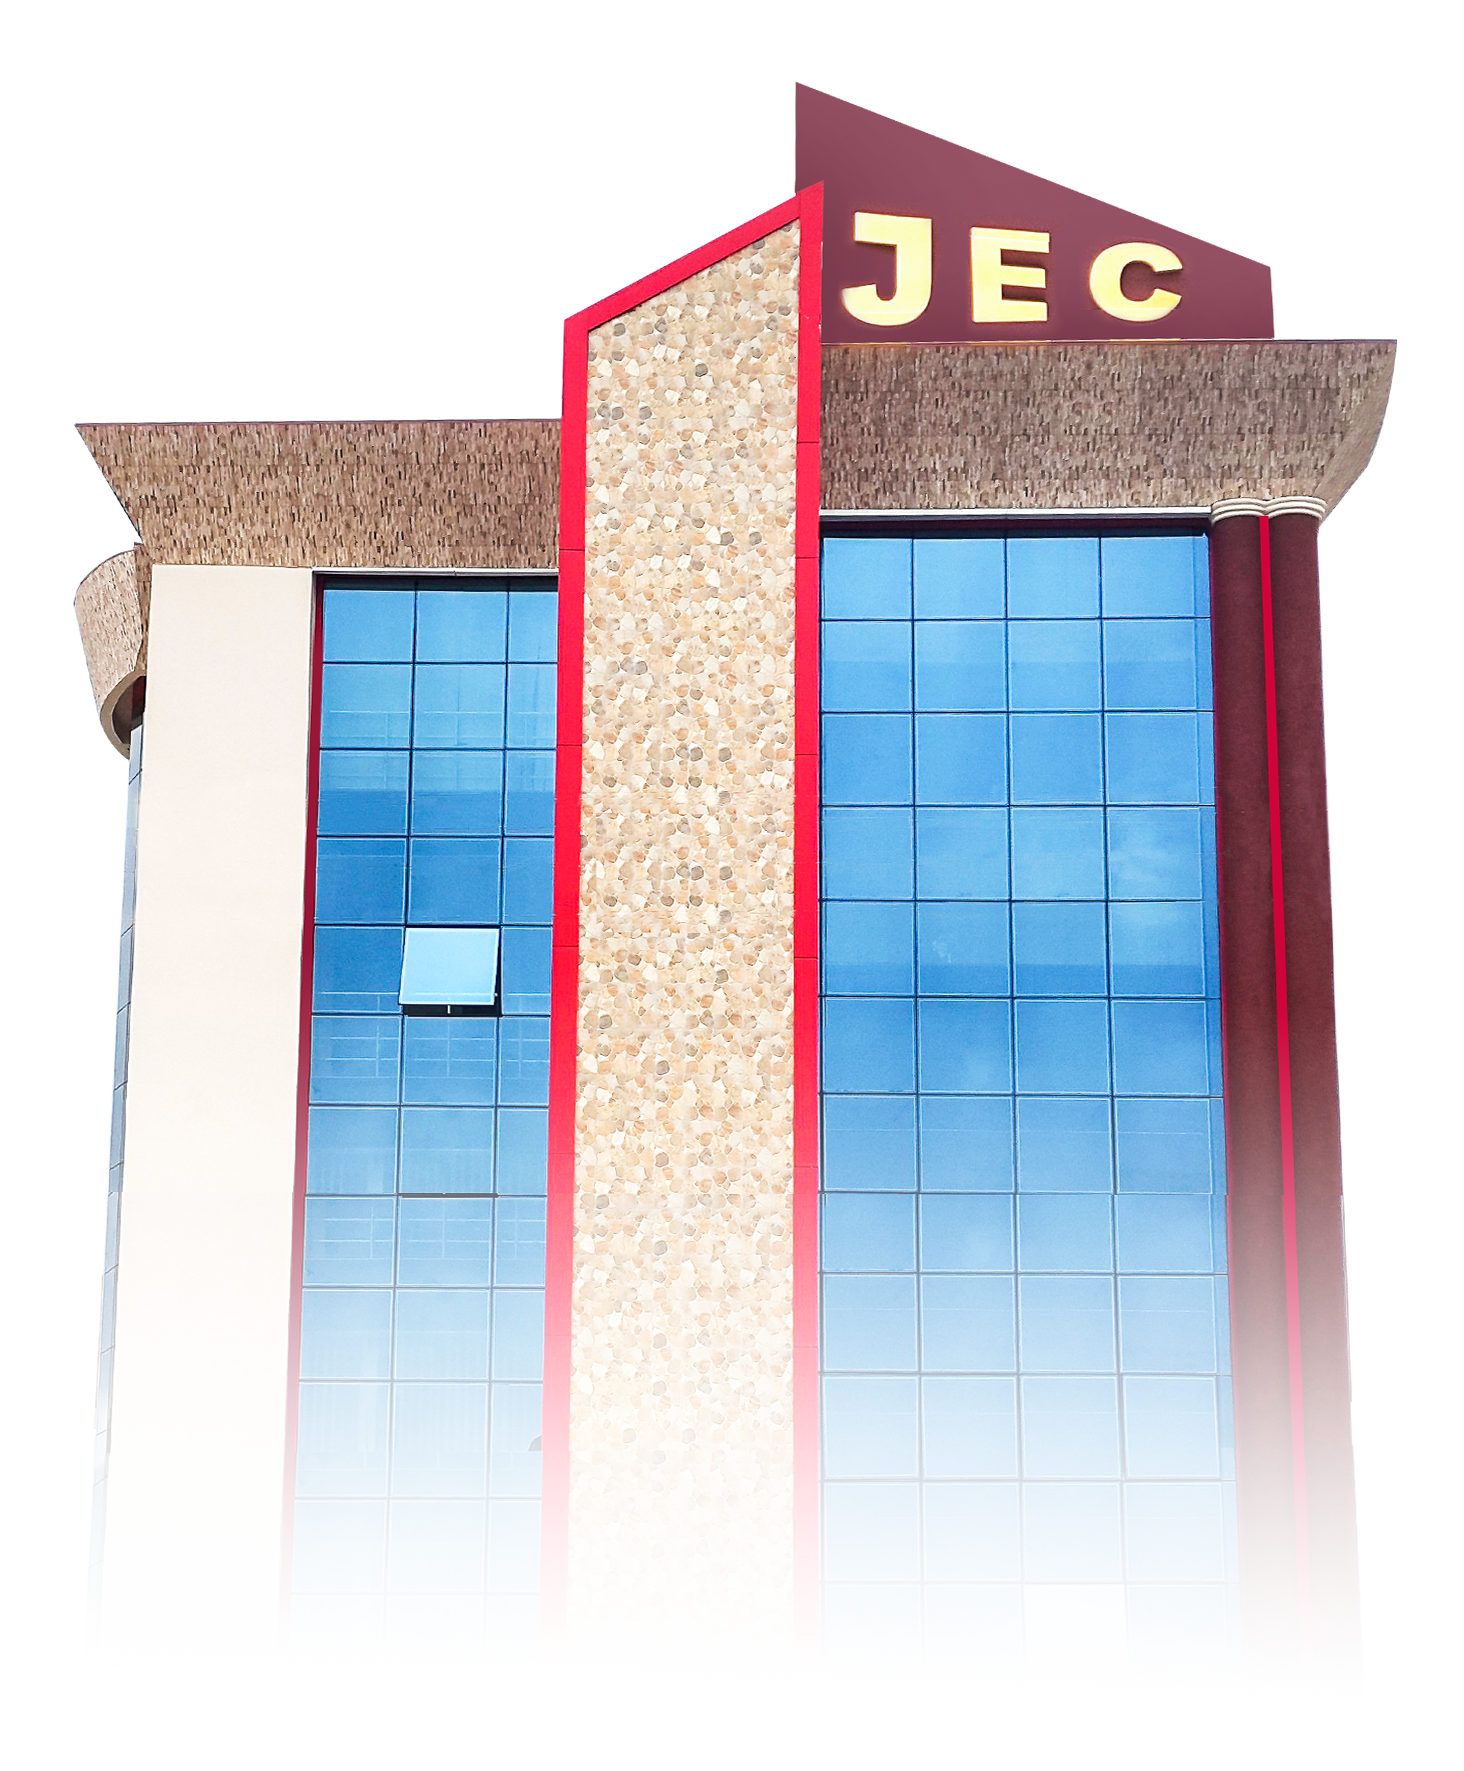 JEC building